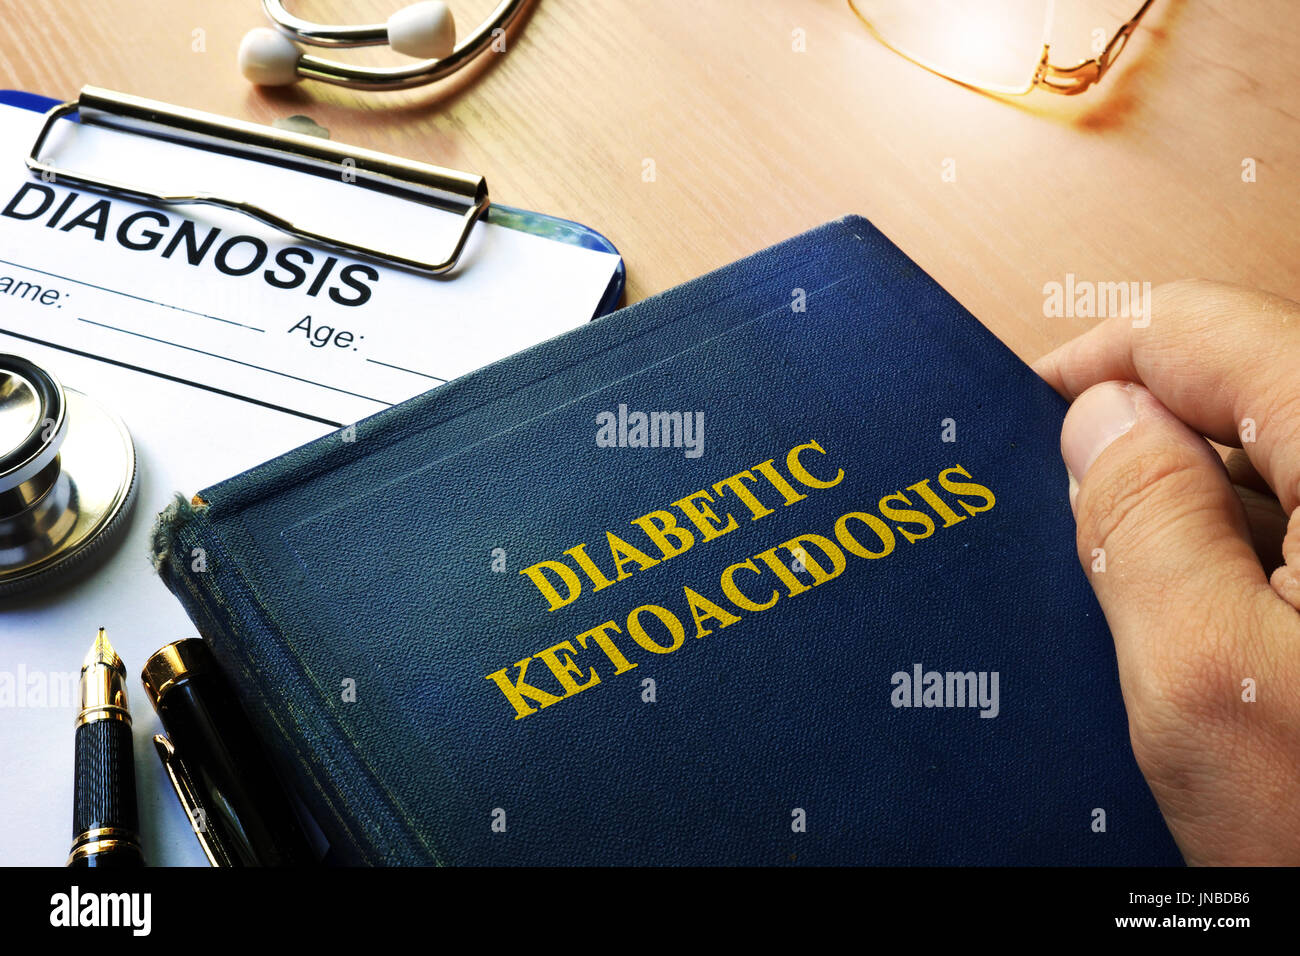 Diabetische Ketoazidose Konzept. Arzt holding Buch über die Unordnung. Stockfoto